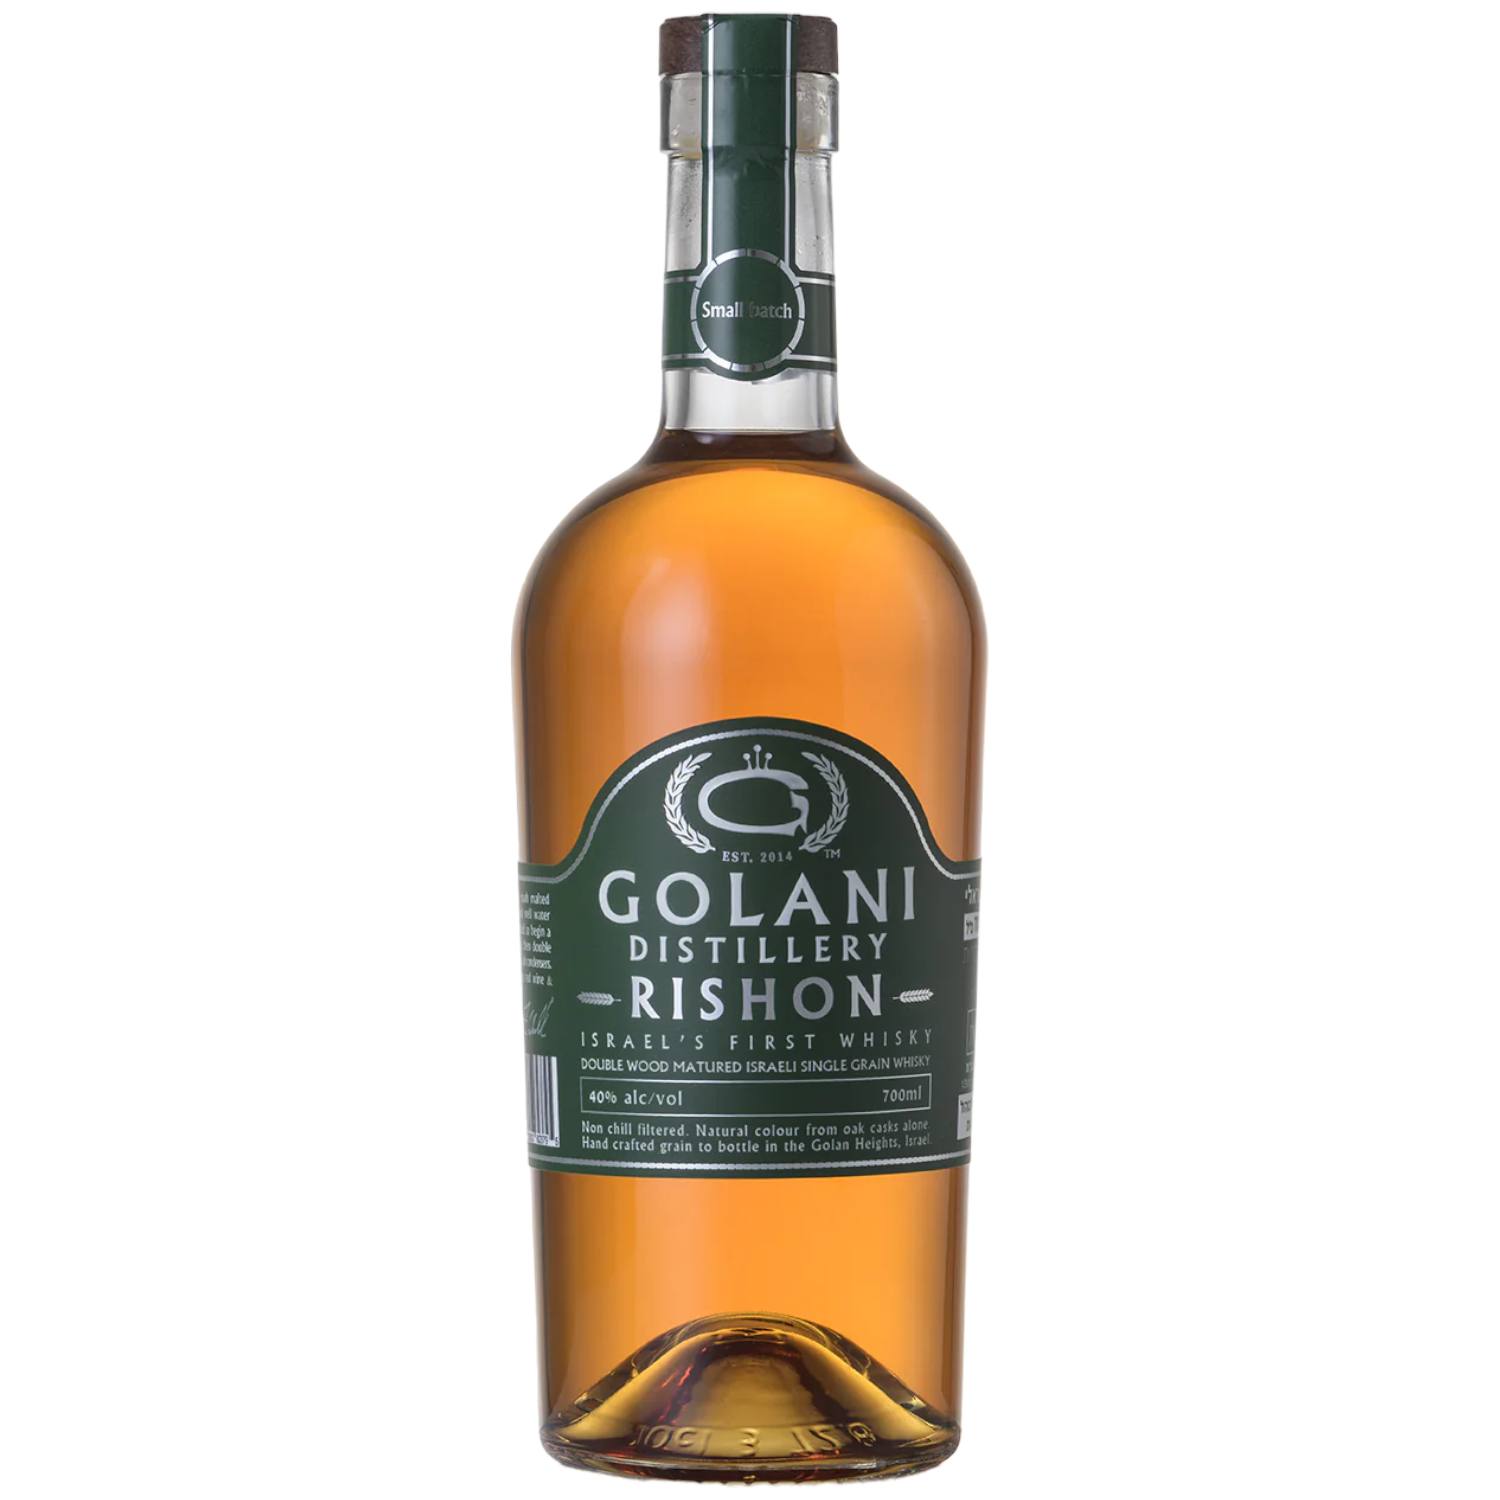 Golani Rishon Single Grain Whisky